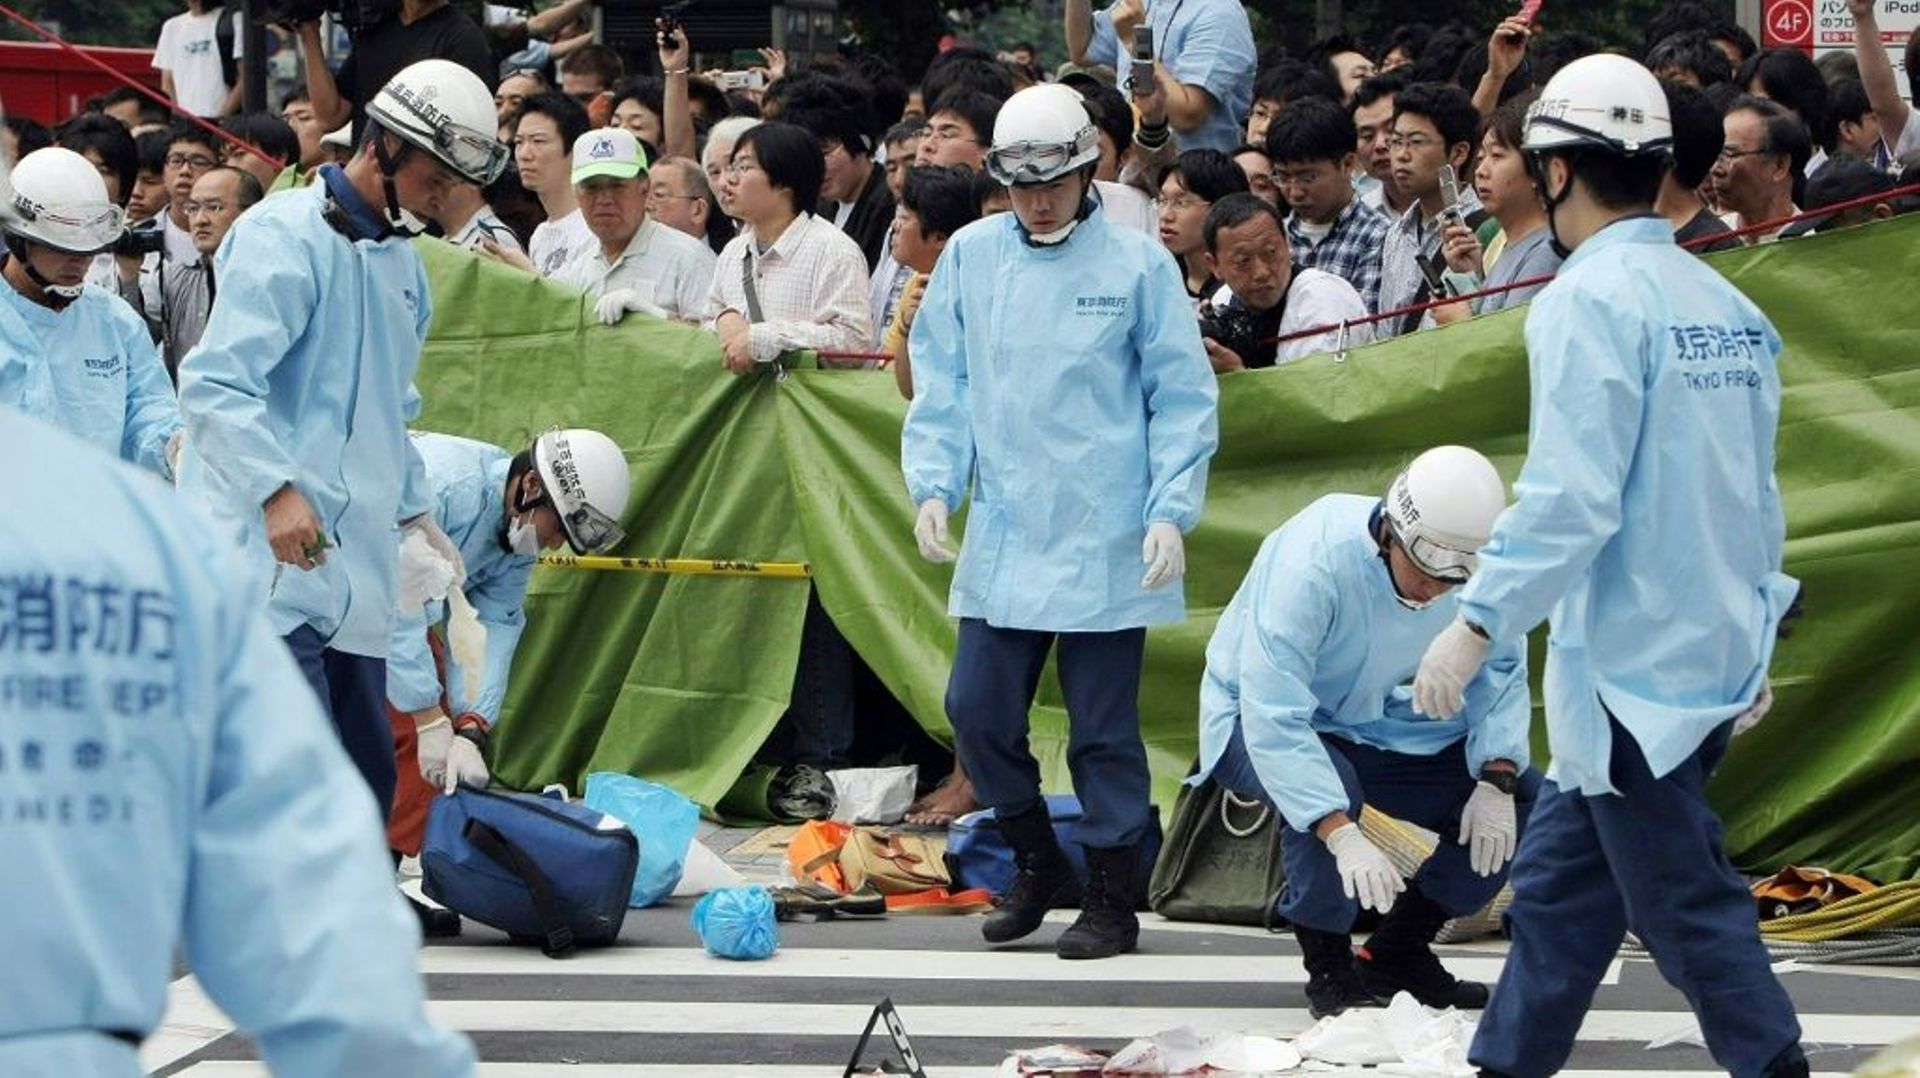 Des équipes de secours sur les lieux où des passants ont été poignardés par un homme, le 8 juin 2008 dans une rue d’Akihabara, quartier de l’électronique à Tokyo, au Japon